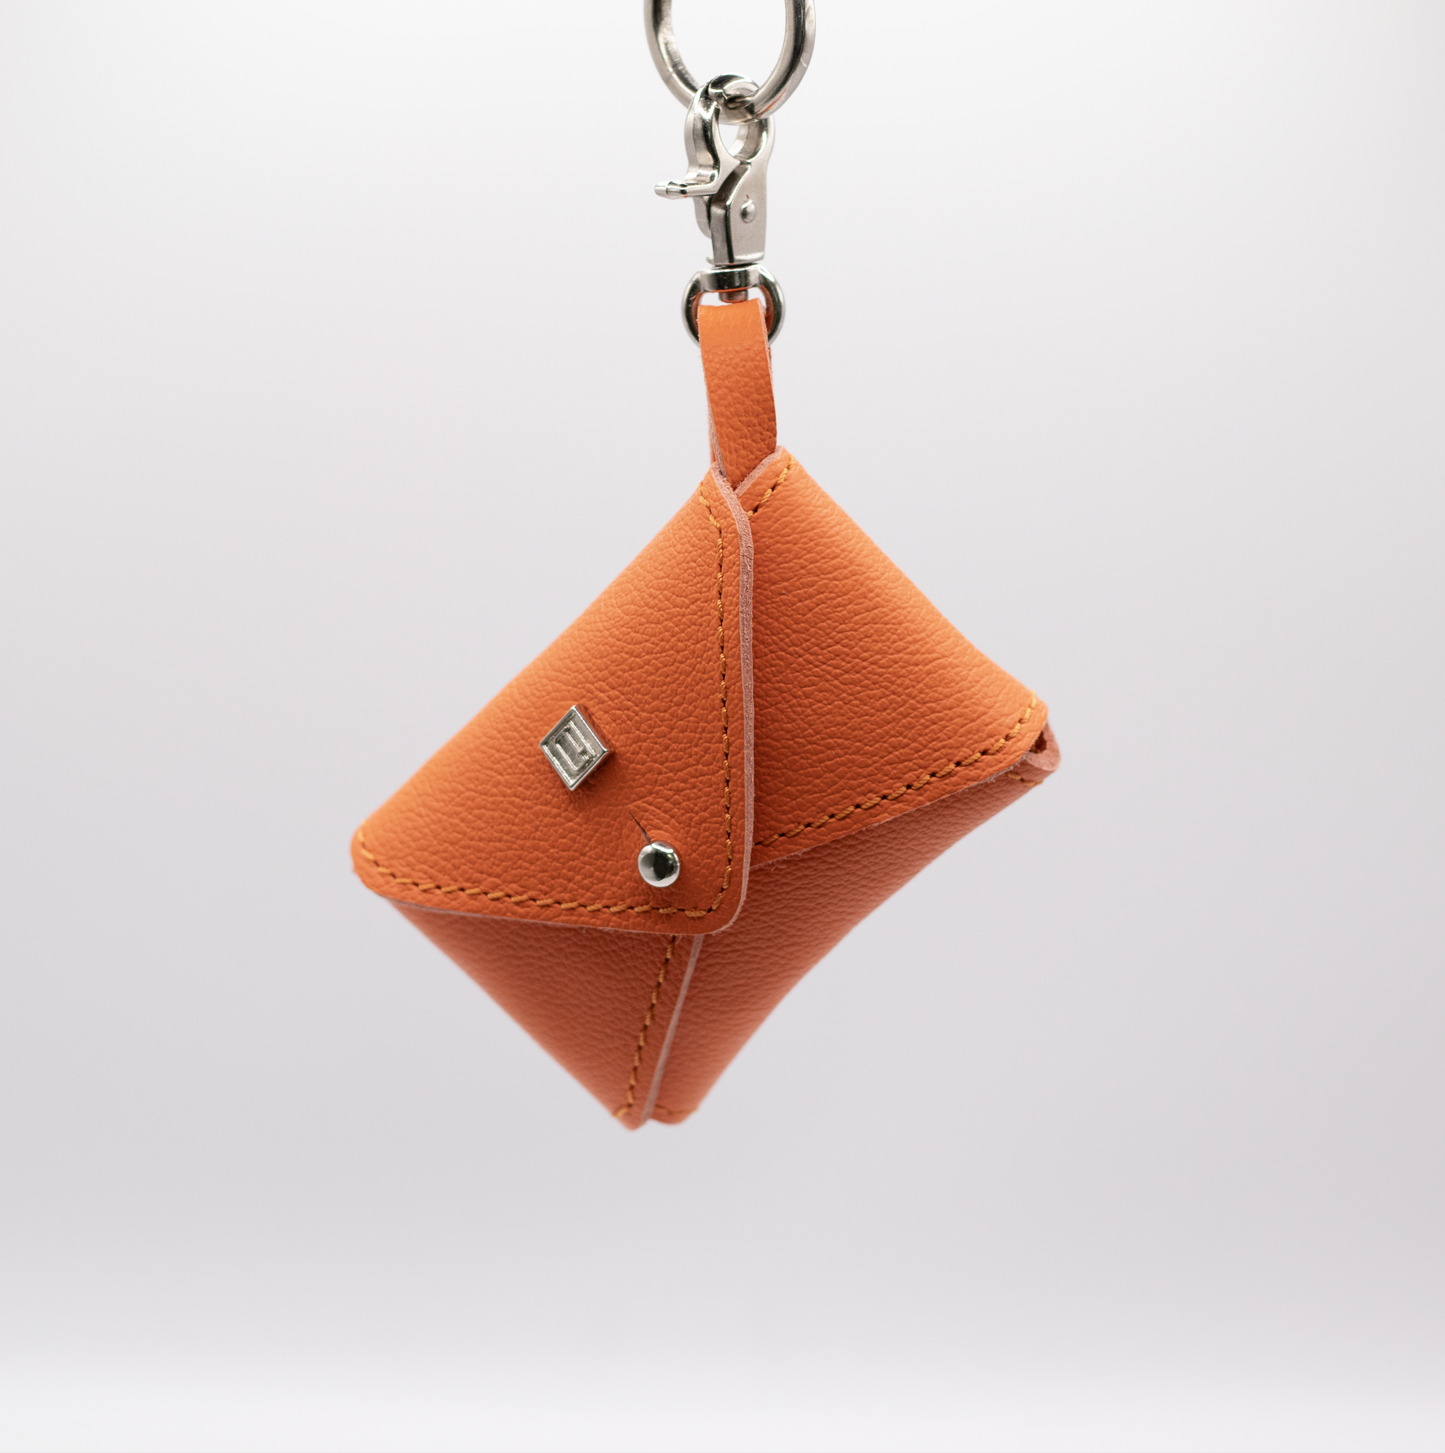 D&H PooSh - Soft Leather Poo Bag Dispenser Orange